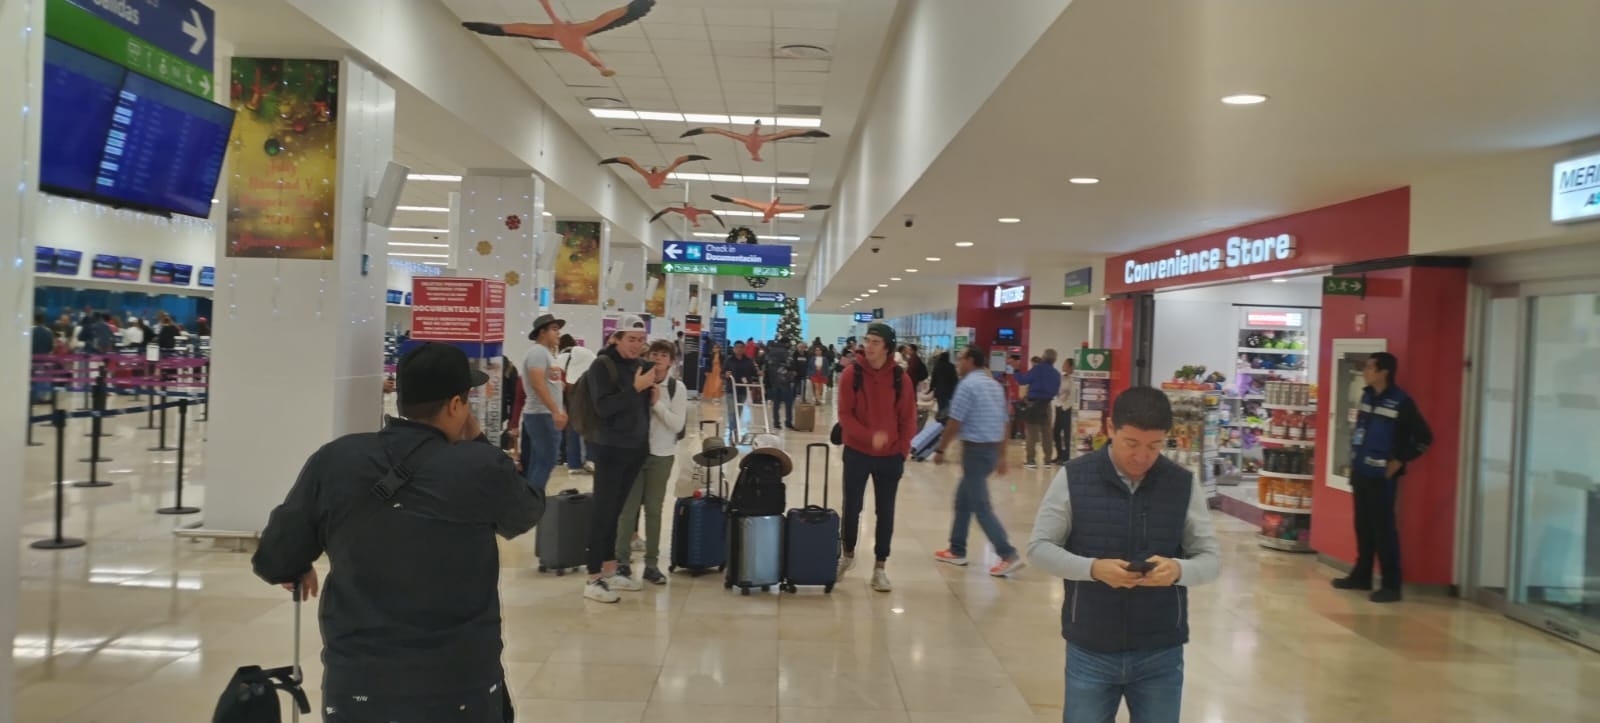 El aeropuerto de Mérida registra vuelos adelantados y retrasados este miércoles